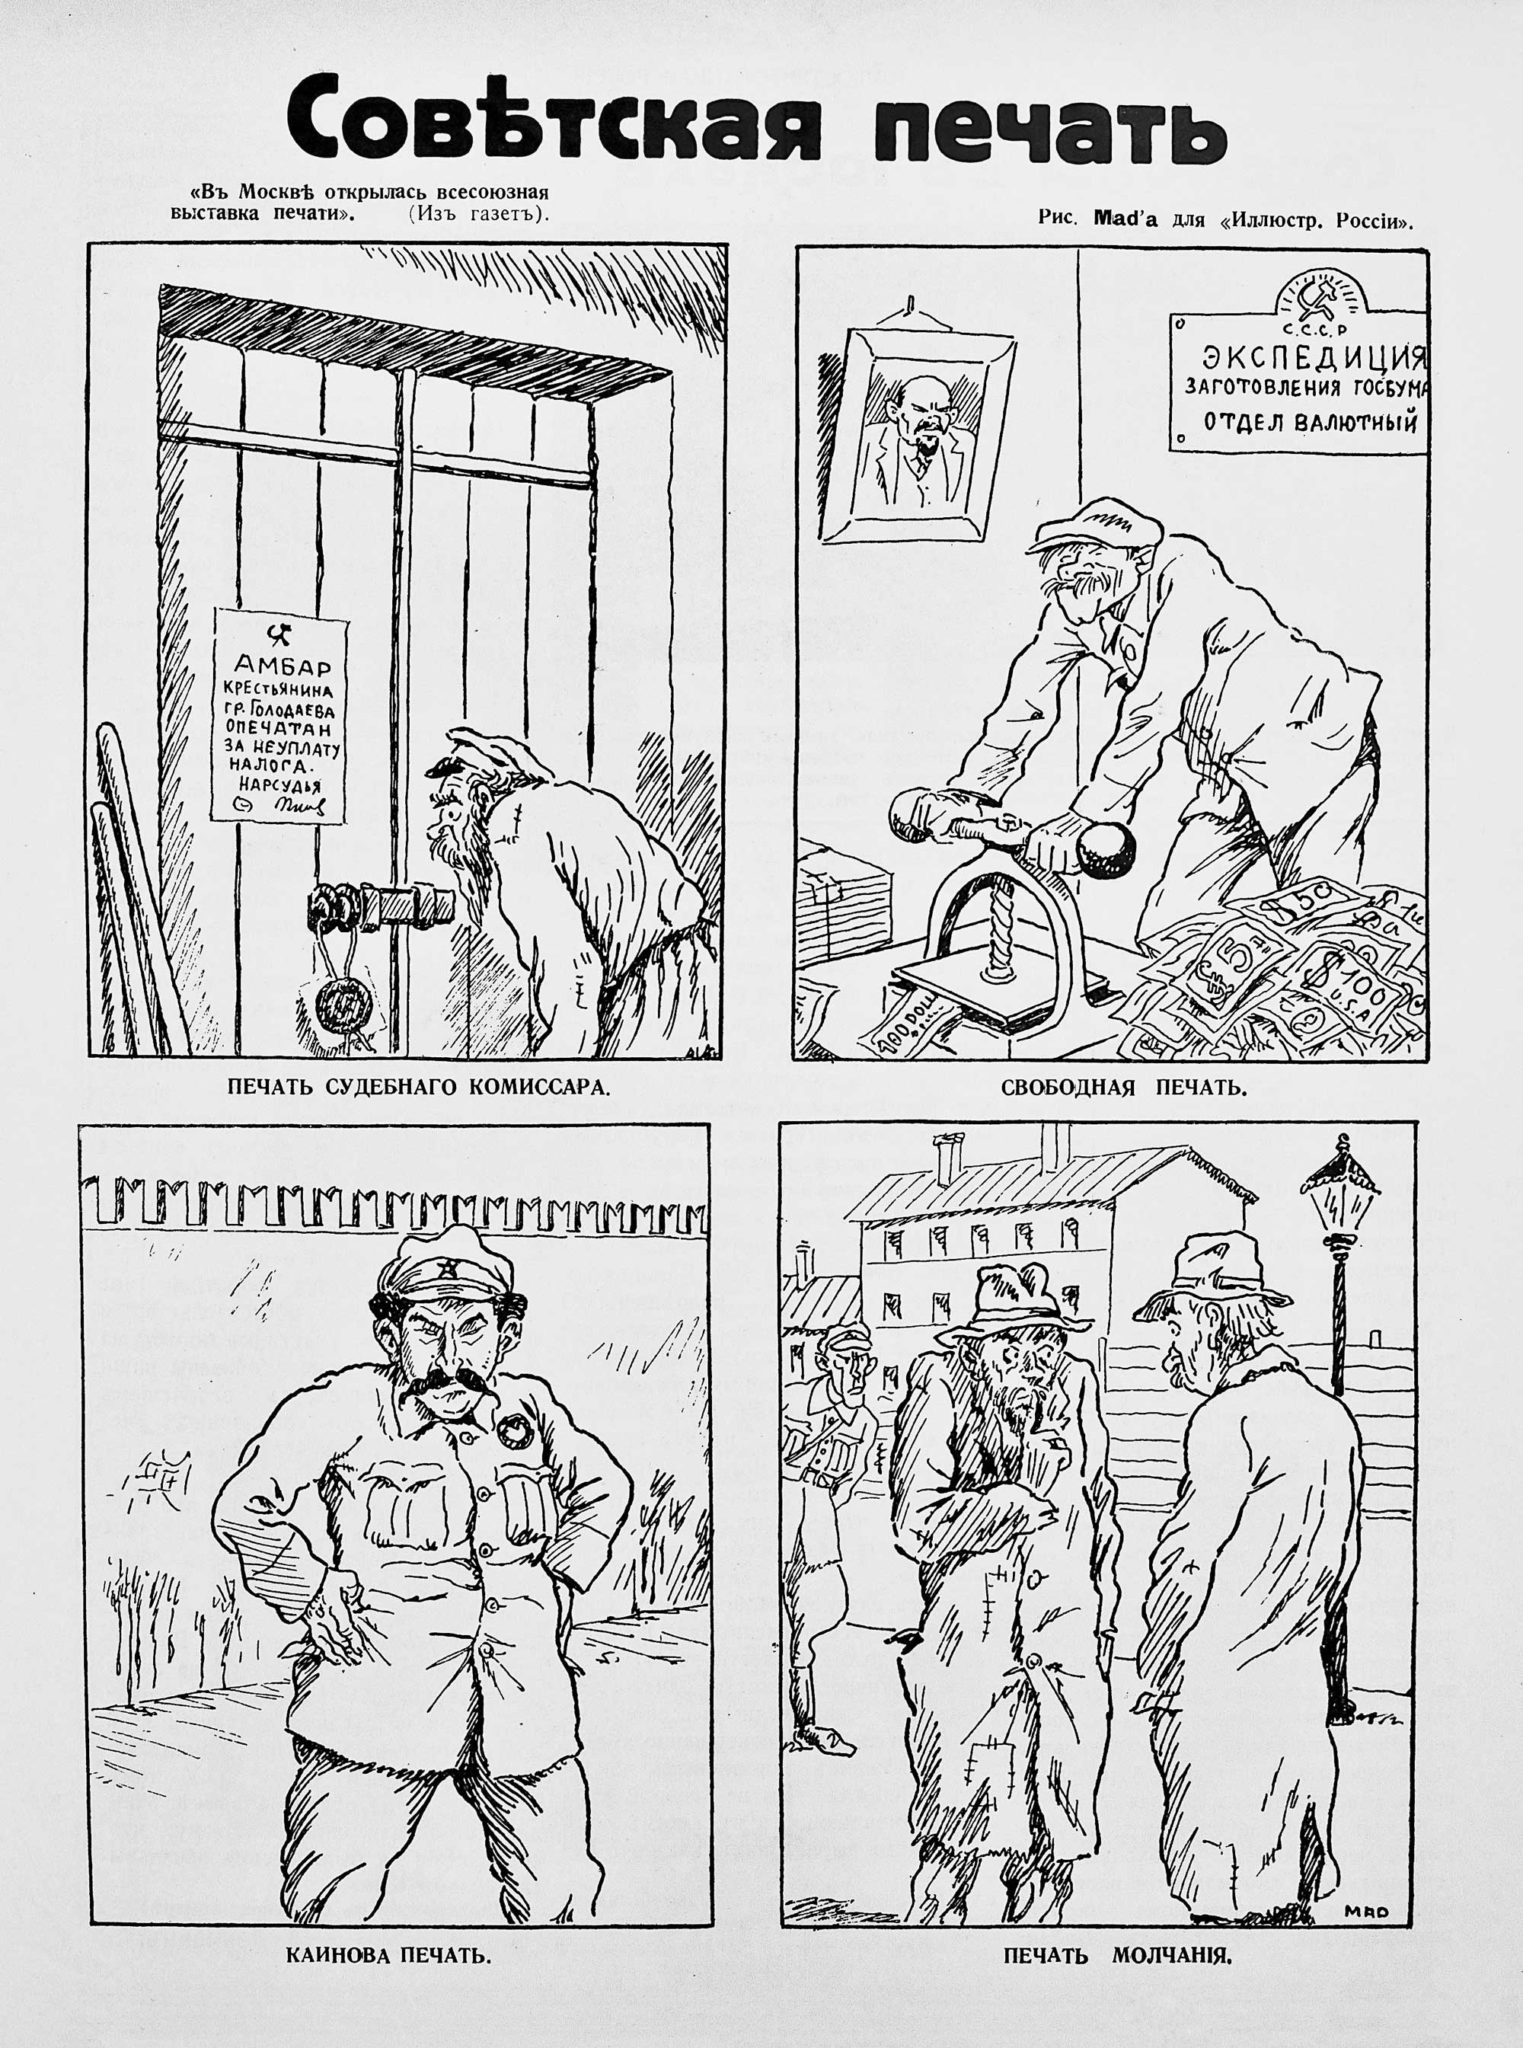 «Советская печать», журнал «Иллюстрированная Россия», выпуск №22, 1930 год